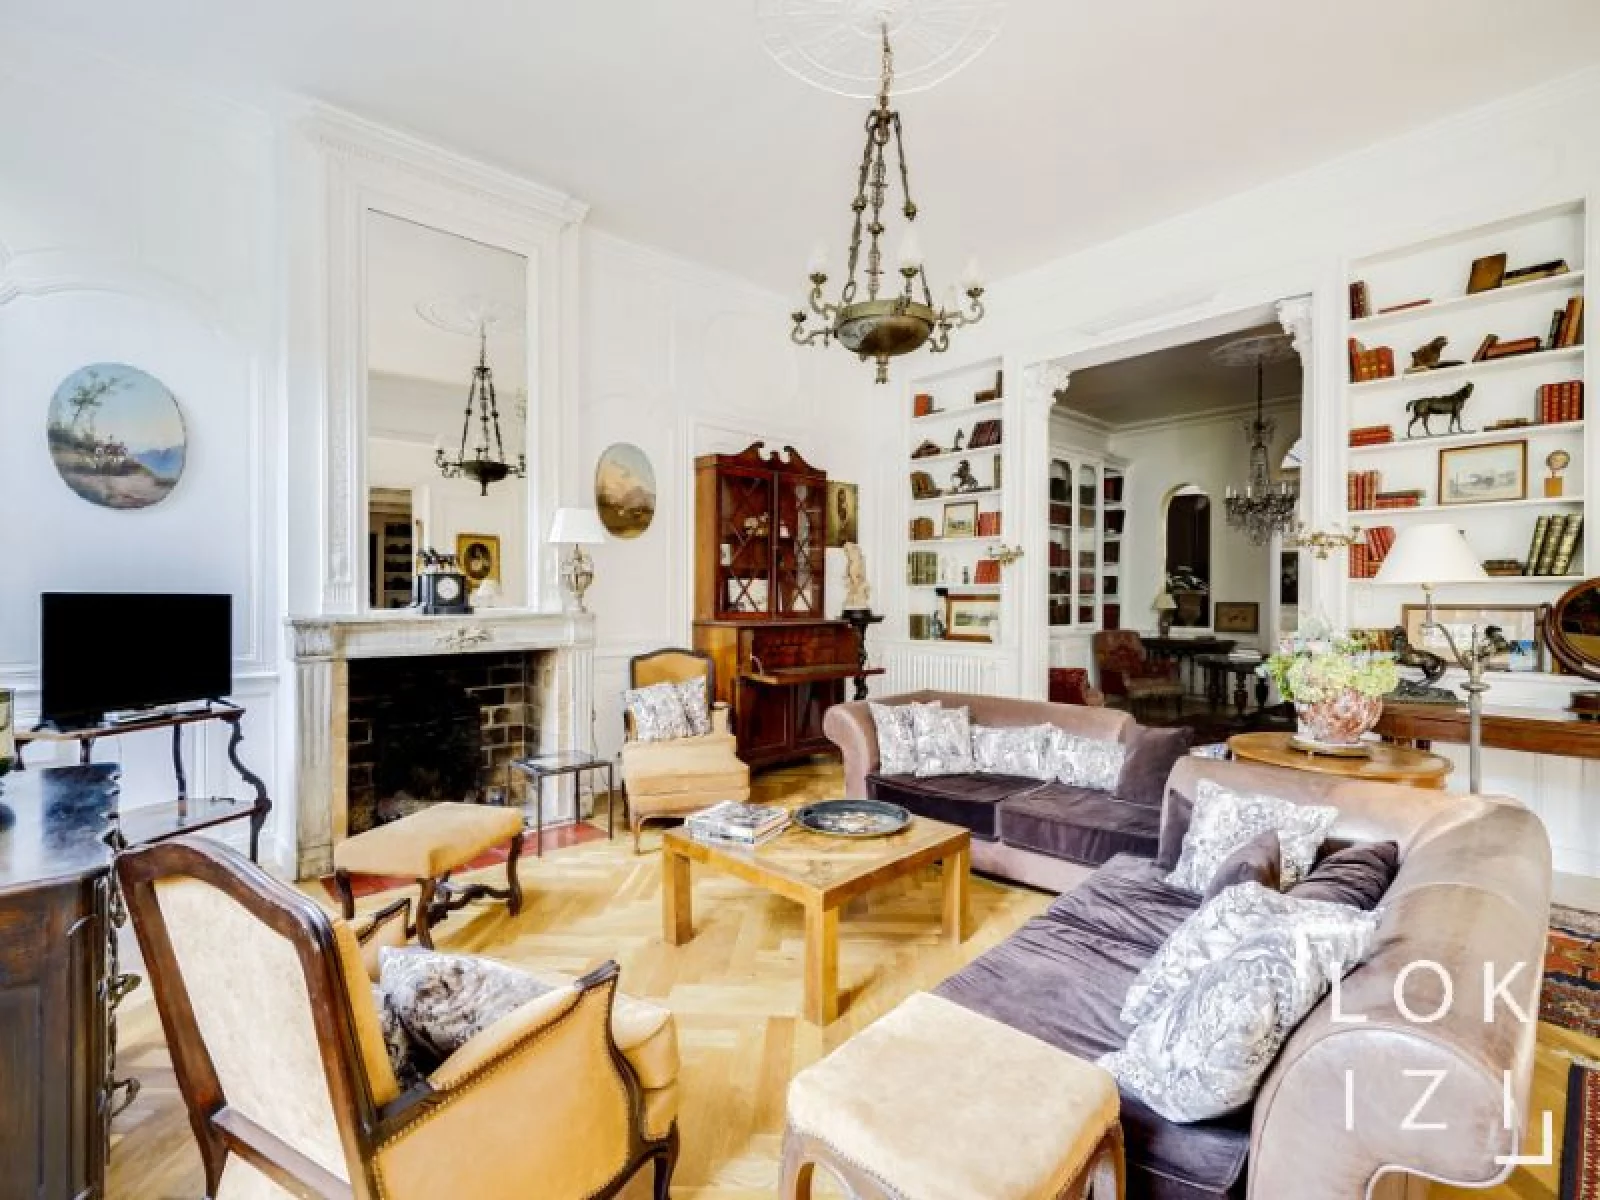 Location maison meublée 377m² (Bordeaux - St Michel)